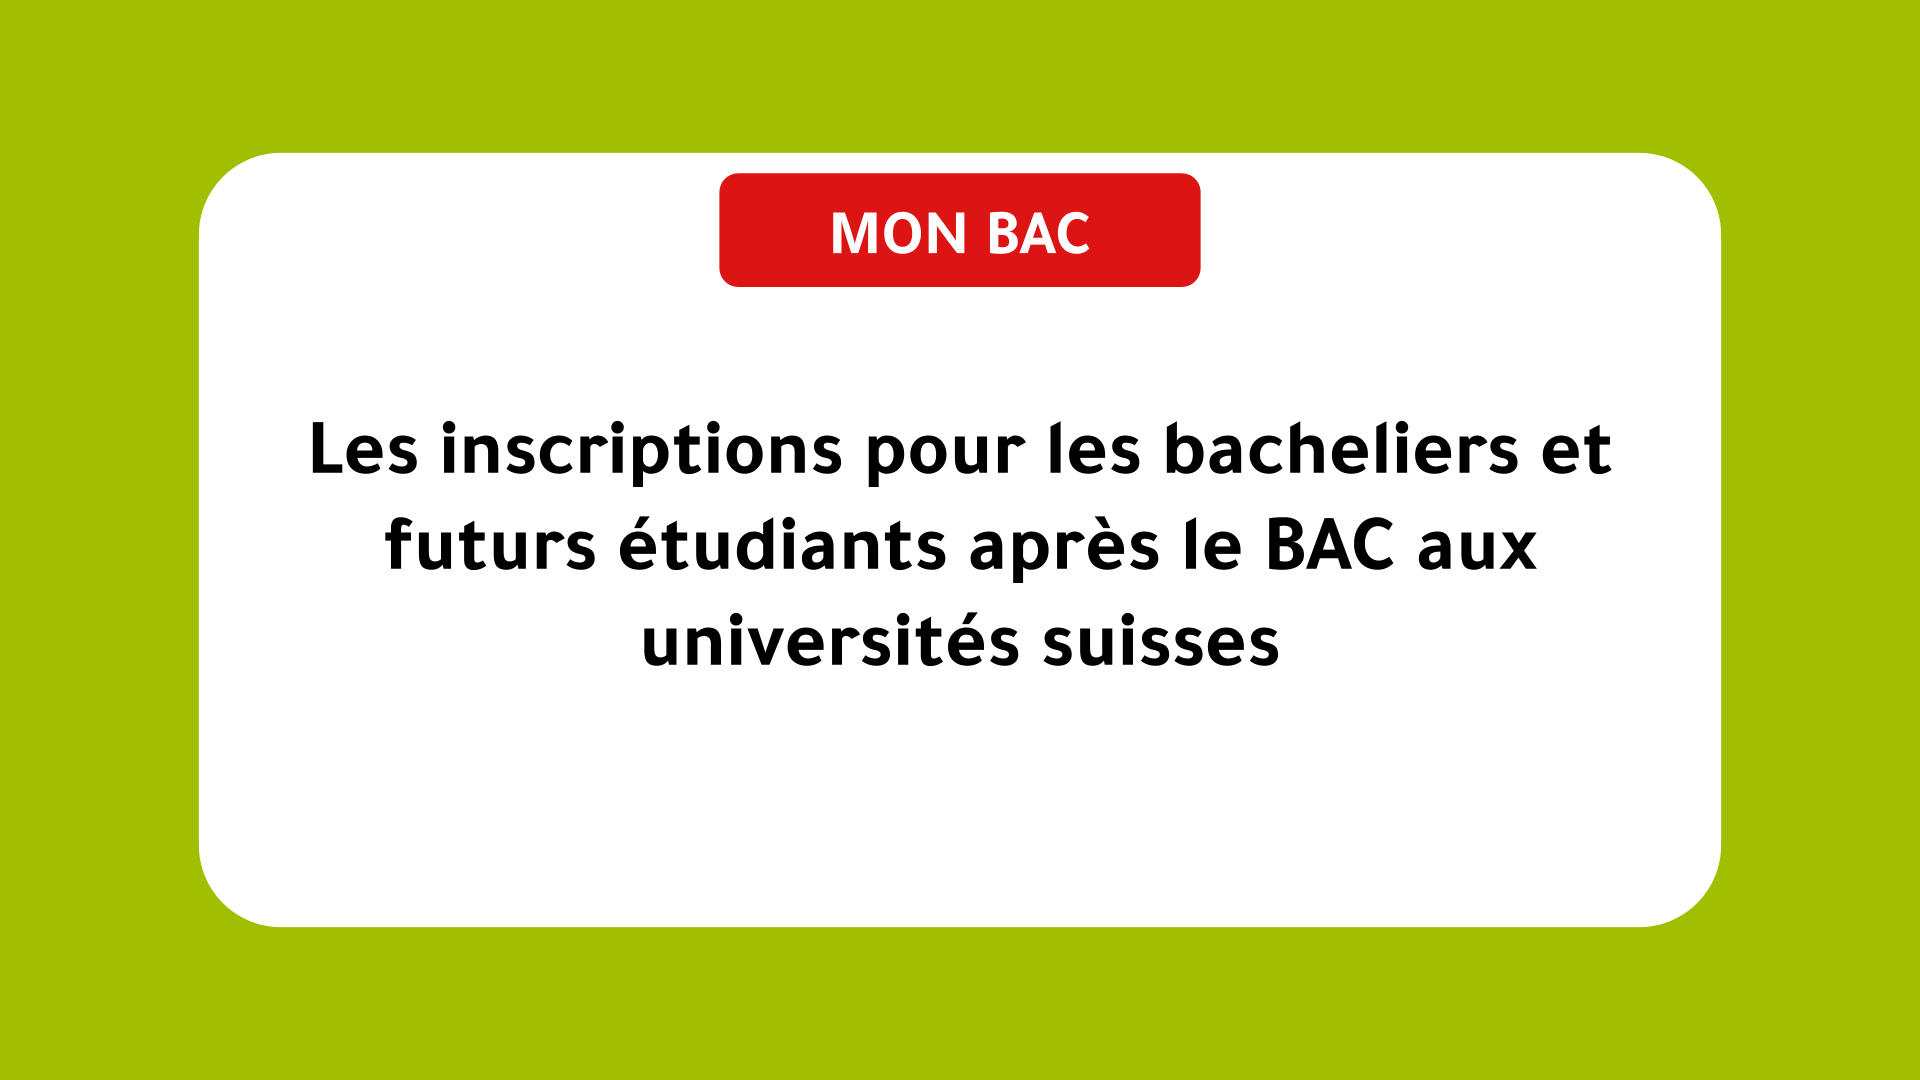 Les inscriptions pour les bacheliers et futurs étudiants après le BAC aux universités suisses